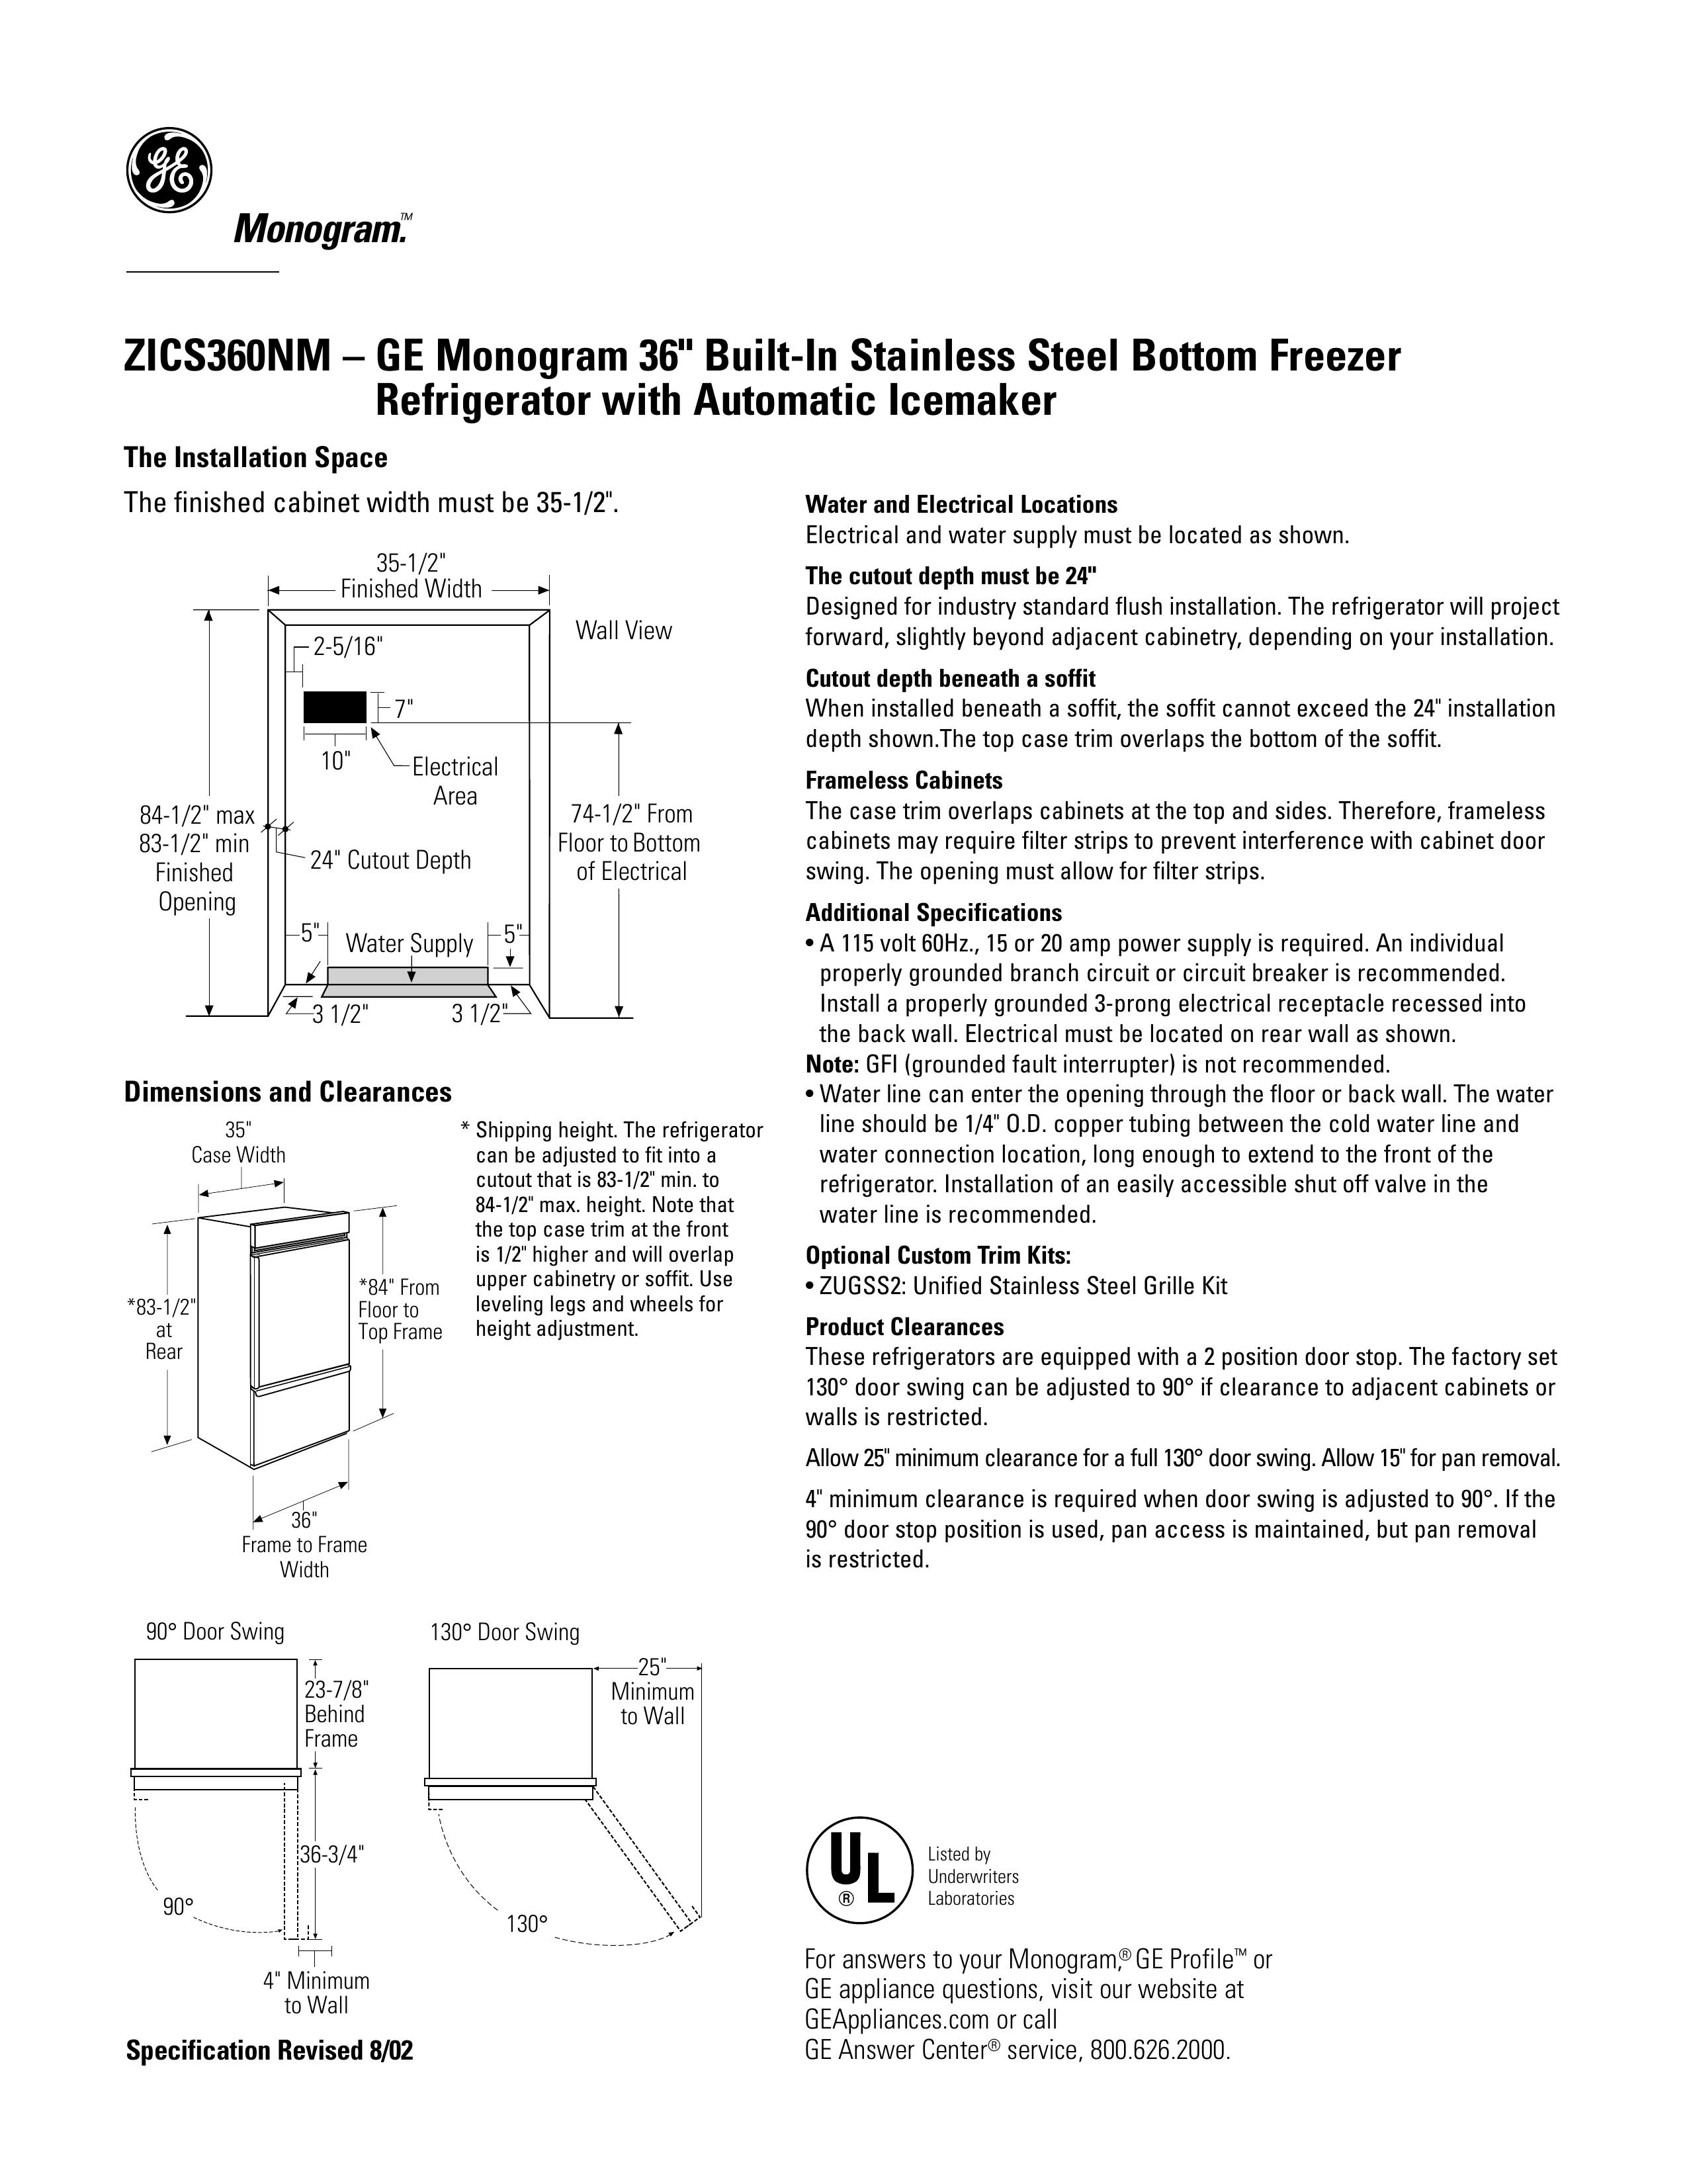 GE Monogram ZICS360NM Refrigerator User Manual